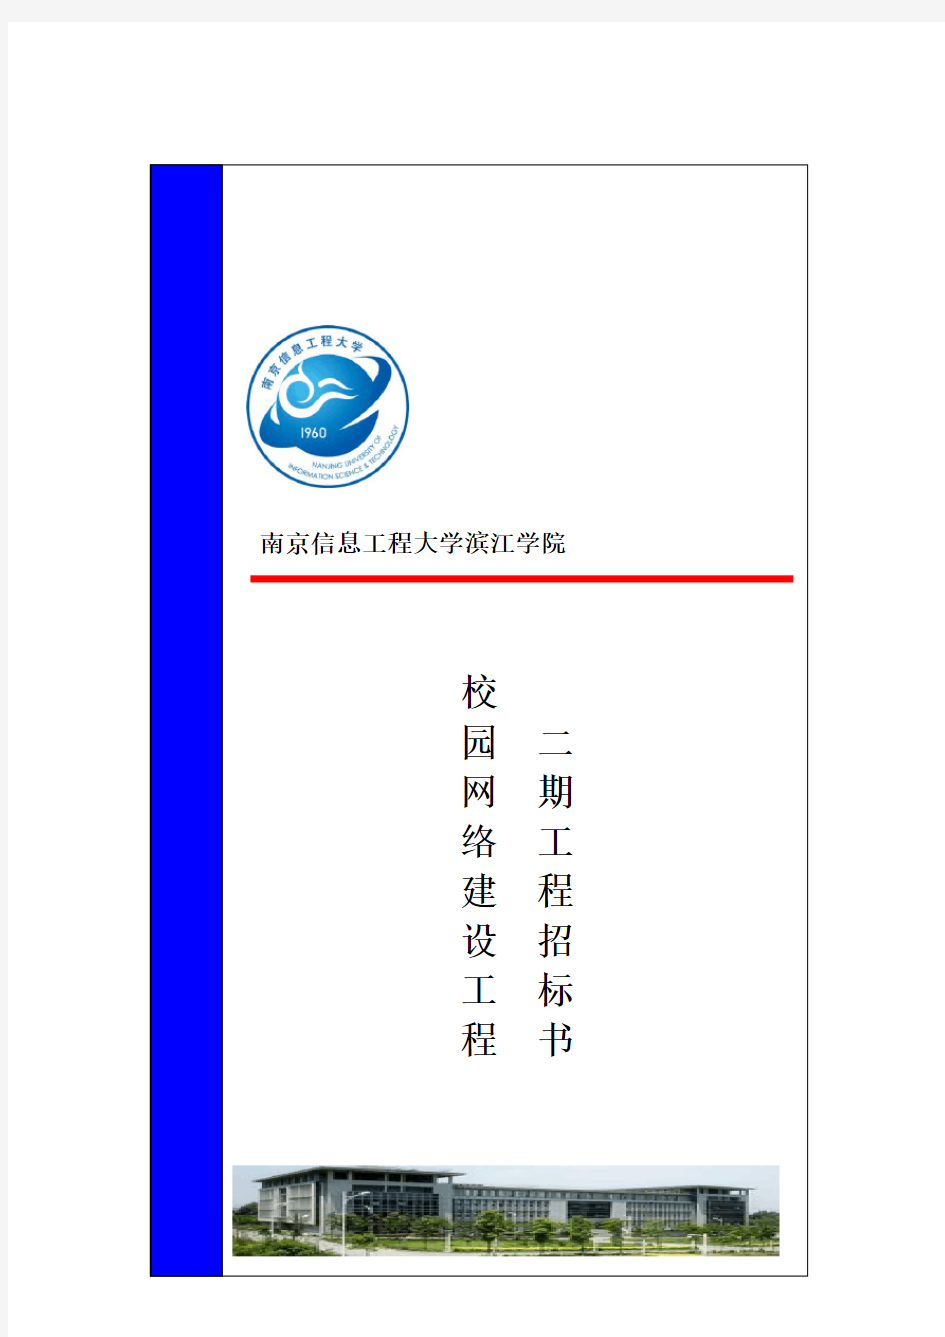 南京信息工程大学滨江学院校园网二期工程招标书